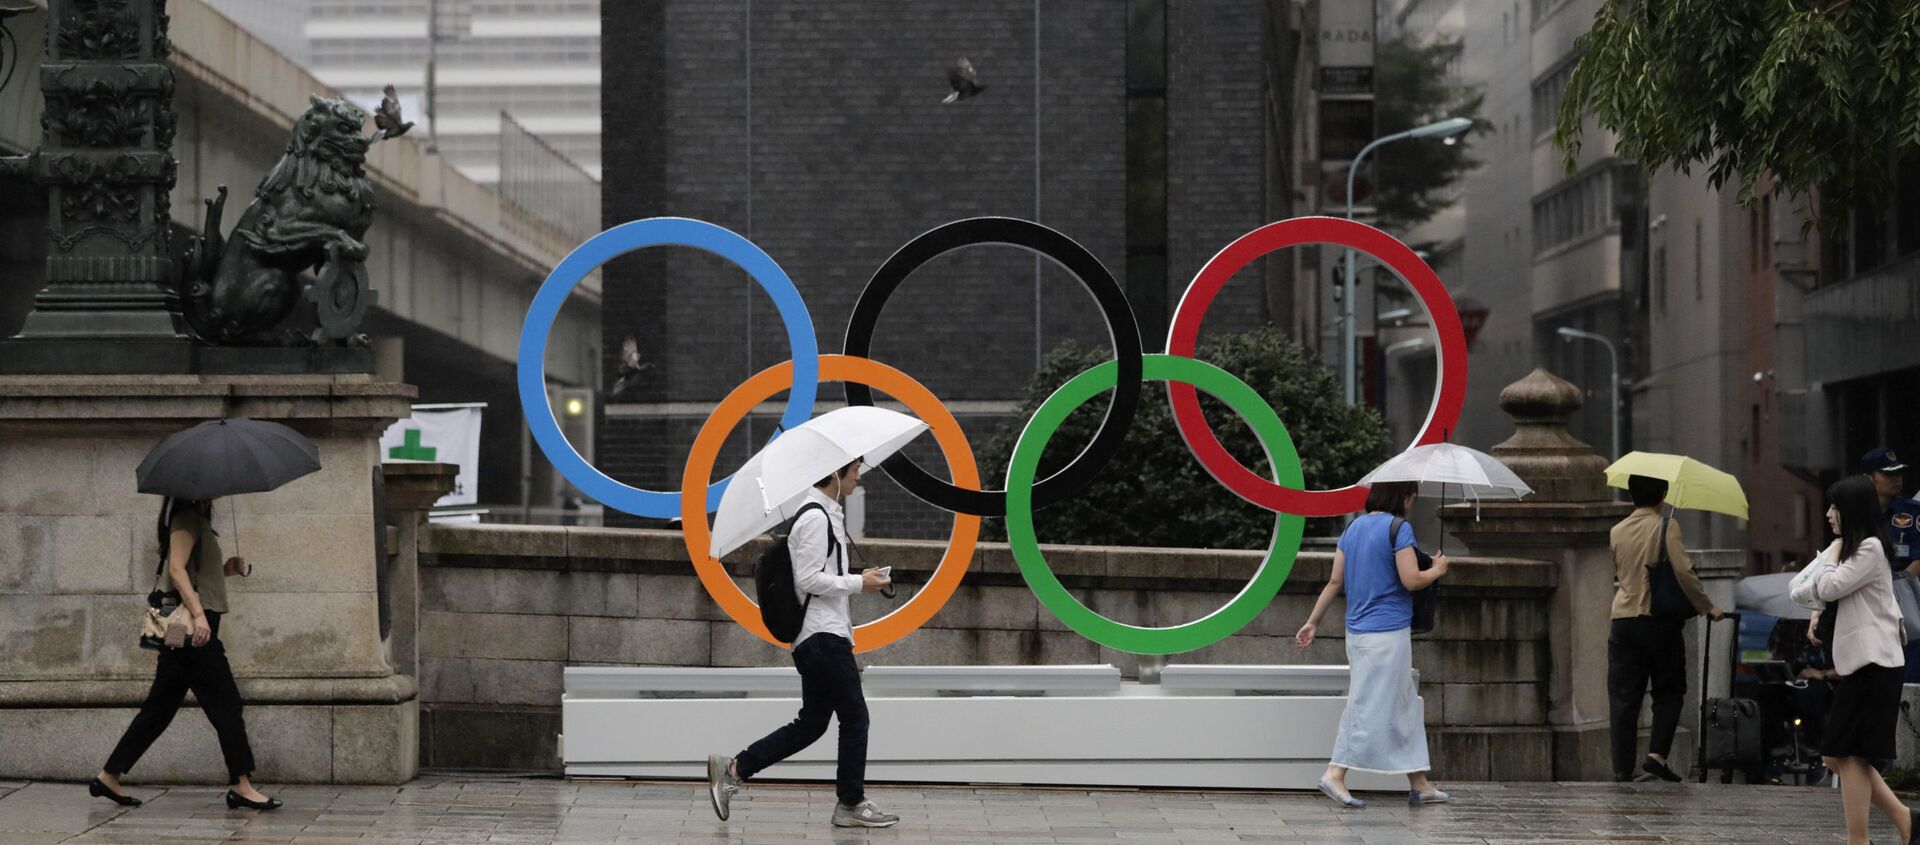 Олимпийские кольца, установленные в преддверии Олимпиады-2020 в центре Токио - Sputnik Южная Осетия, 1920, 12.07.2021